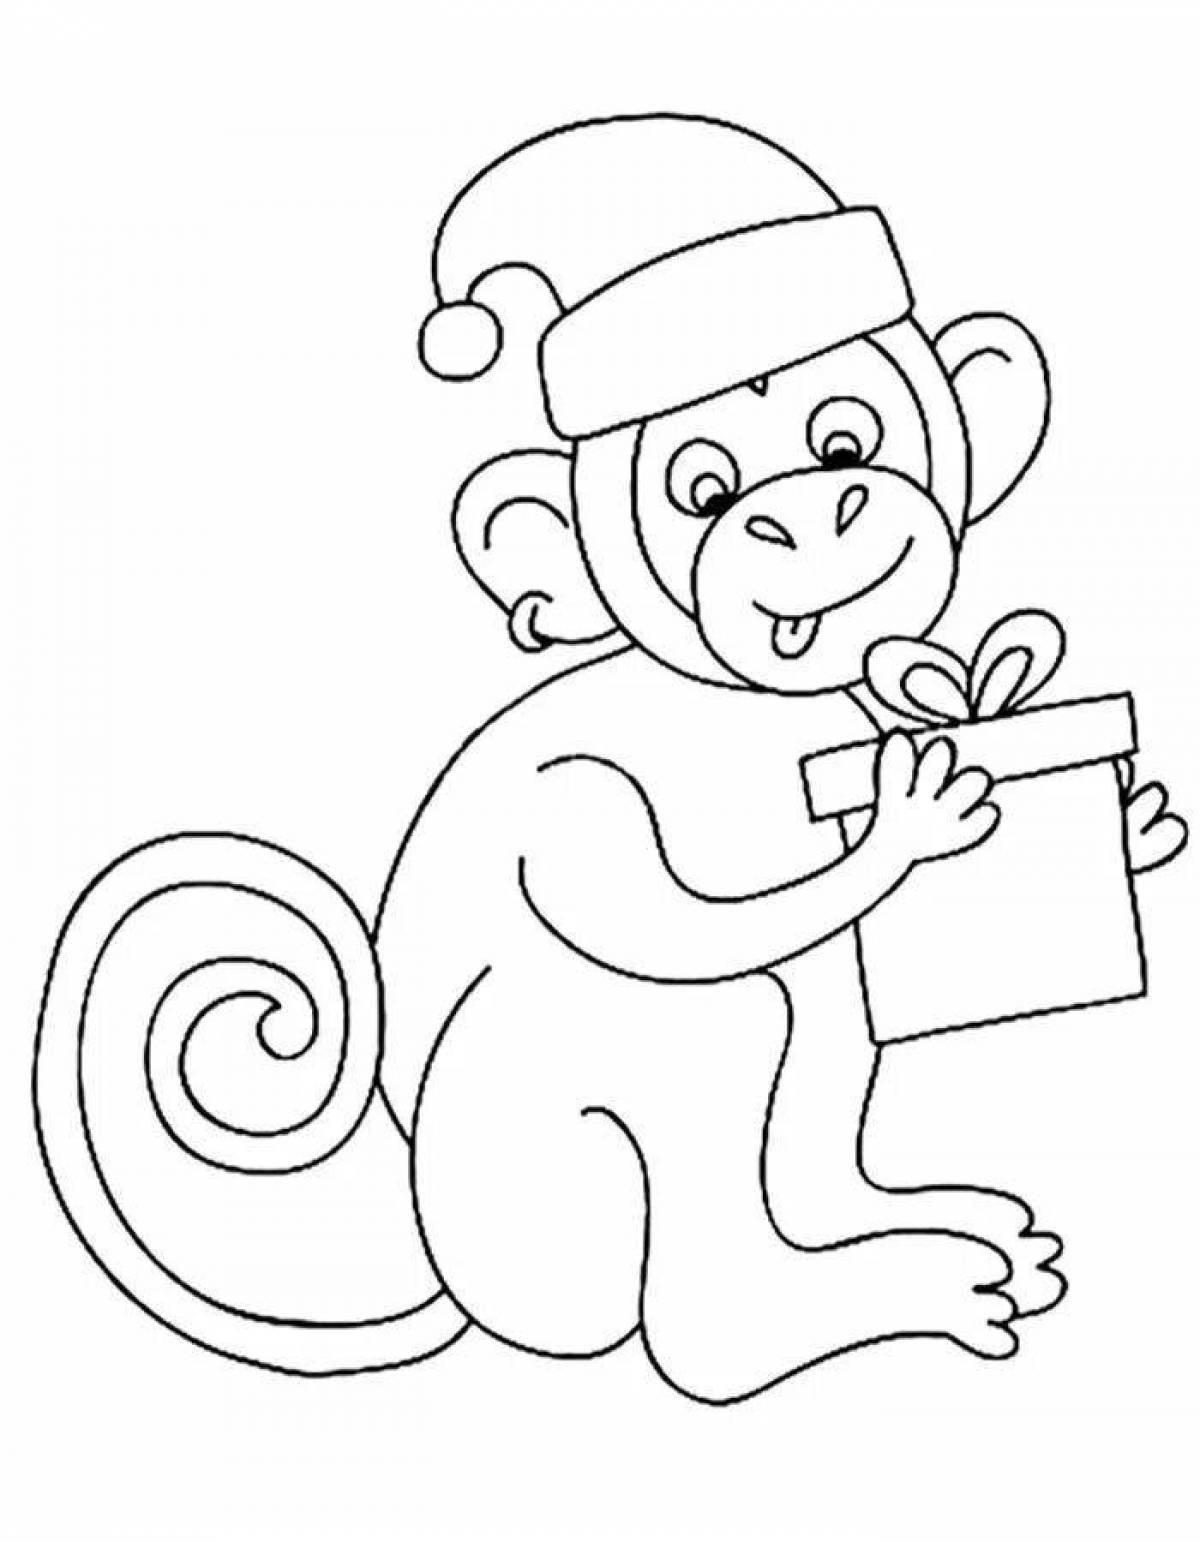 Остроумная раскраска обезьяна